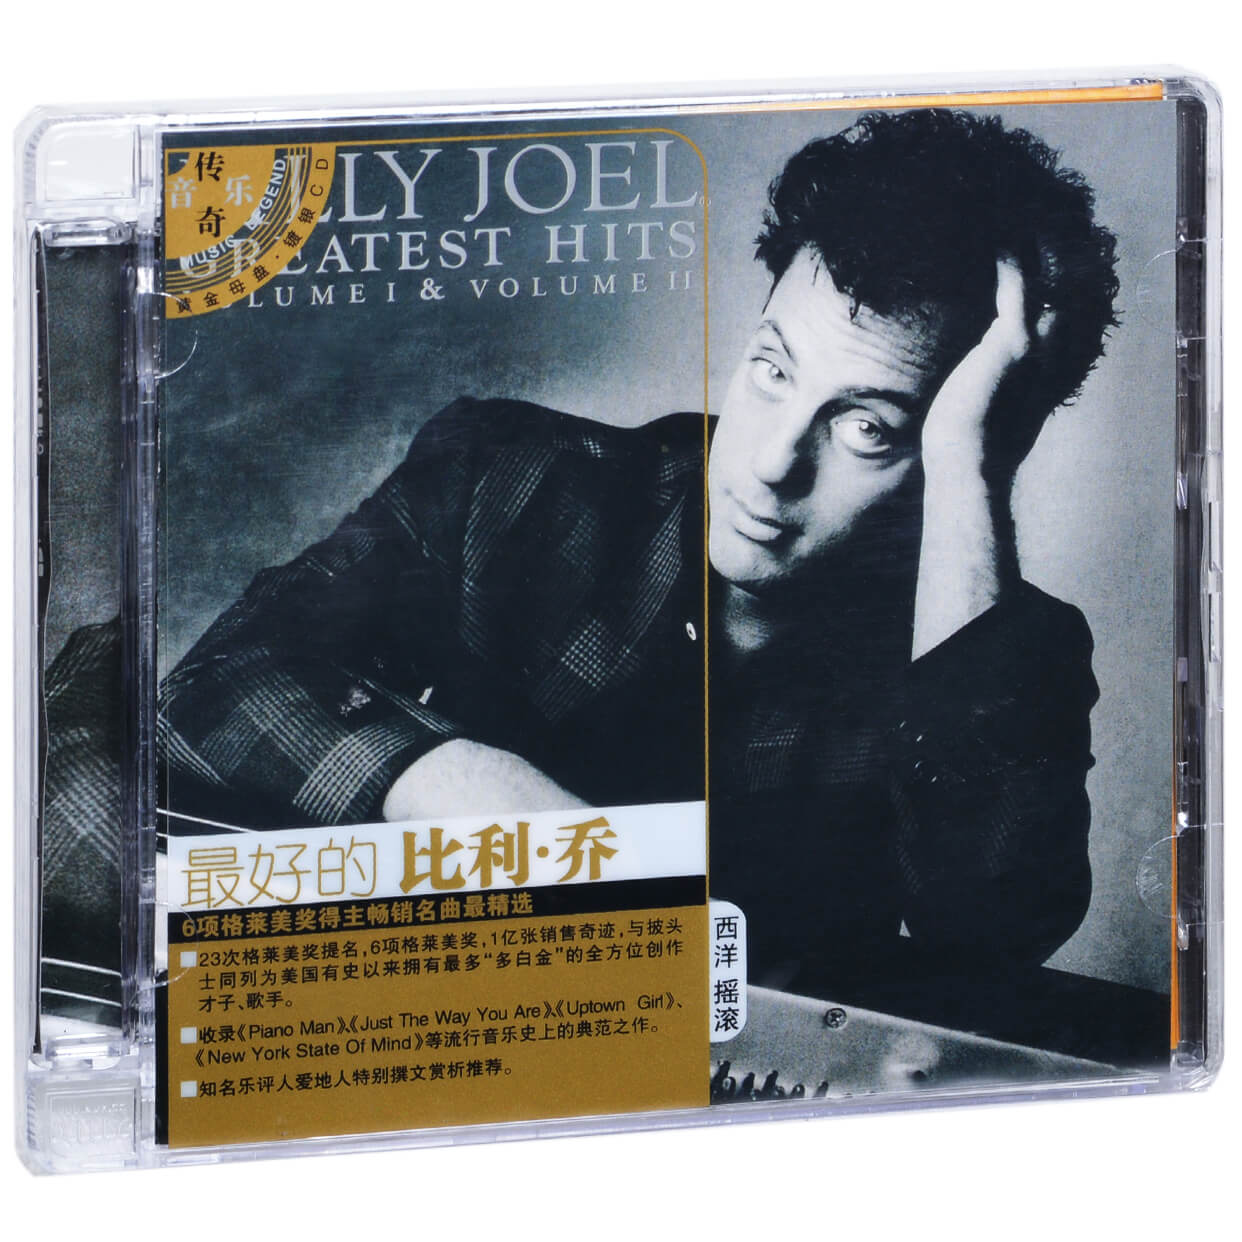 正版特价最好的比利乔 Billy Joel精选专辑唱片 2CD碟片